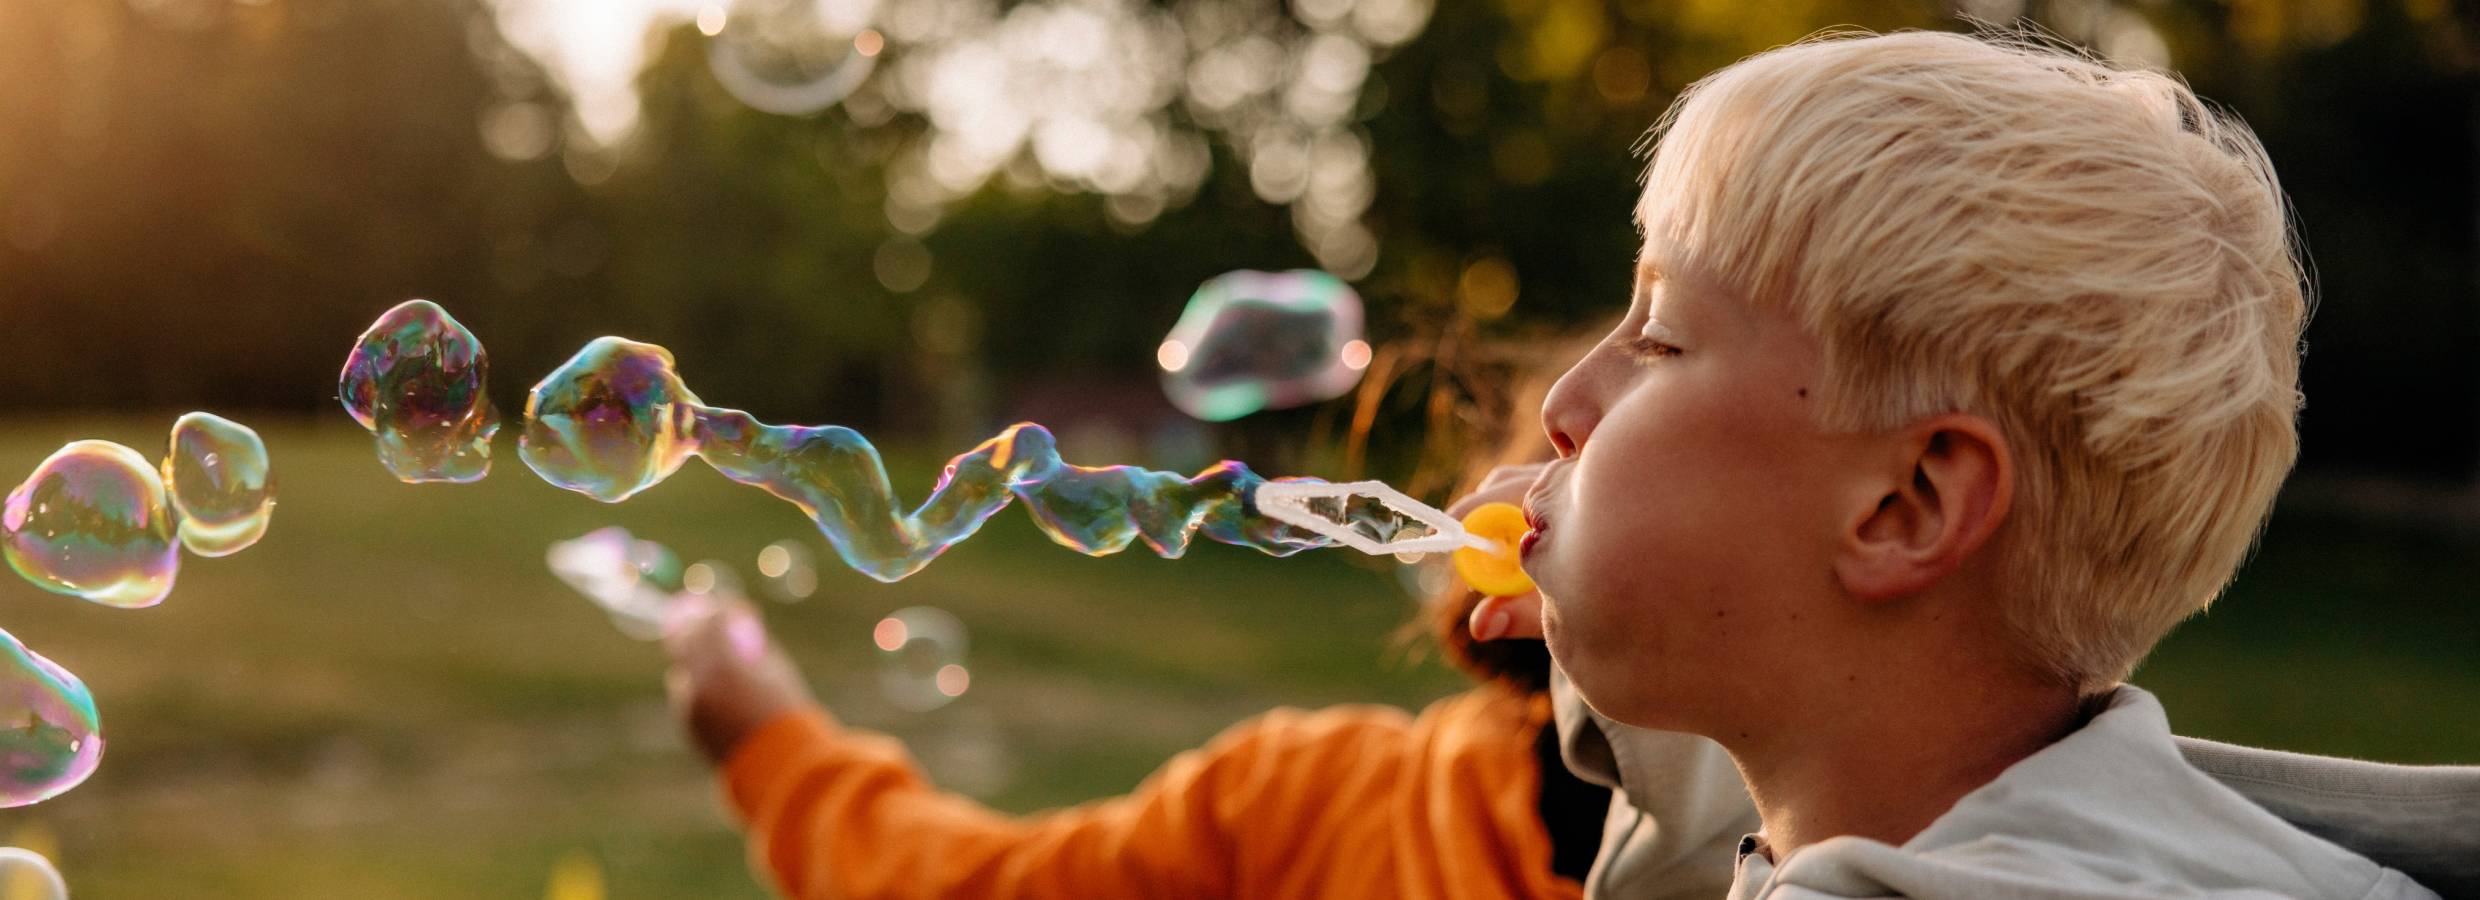 En pojke i profil blåser såpbubblor